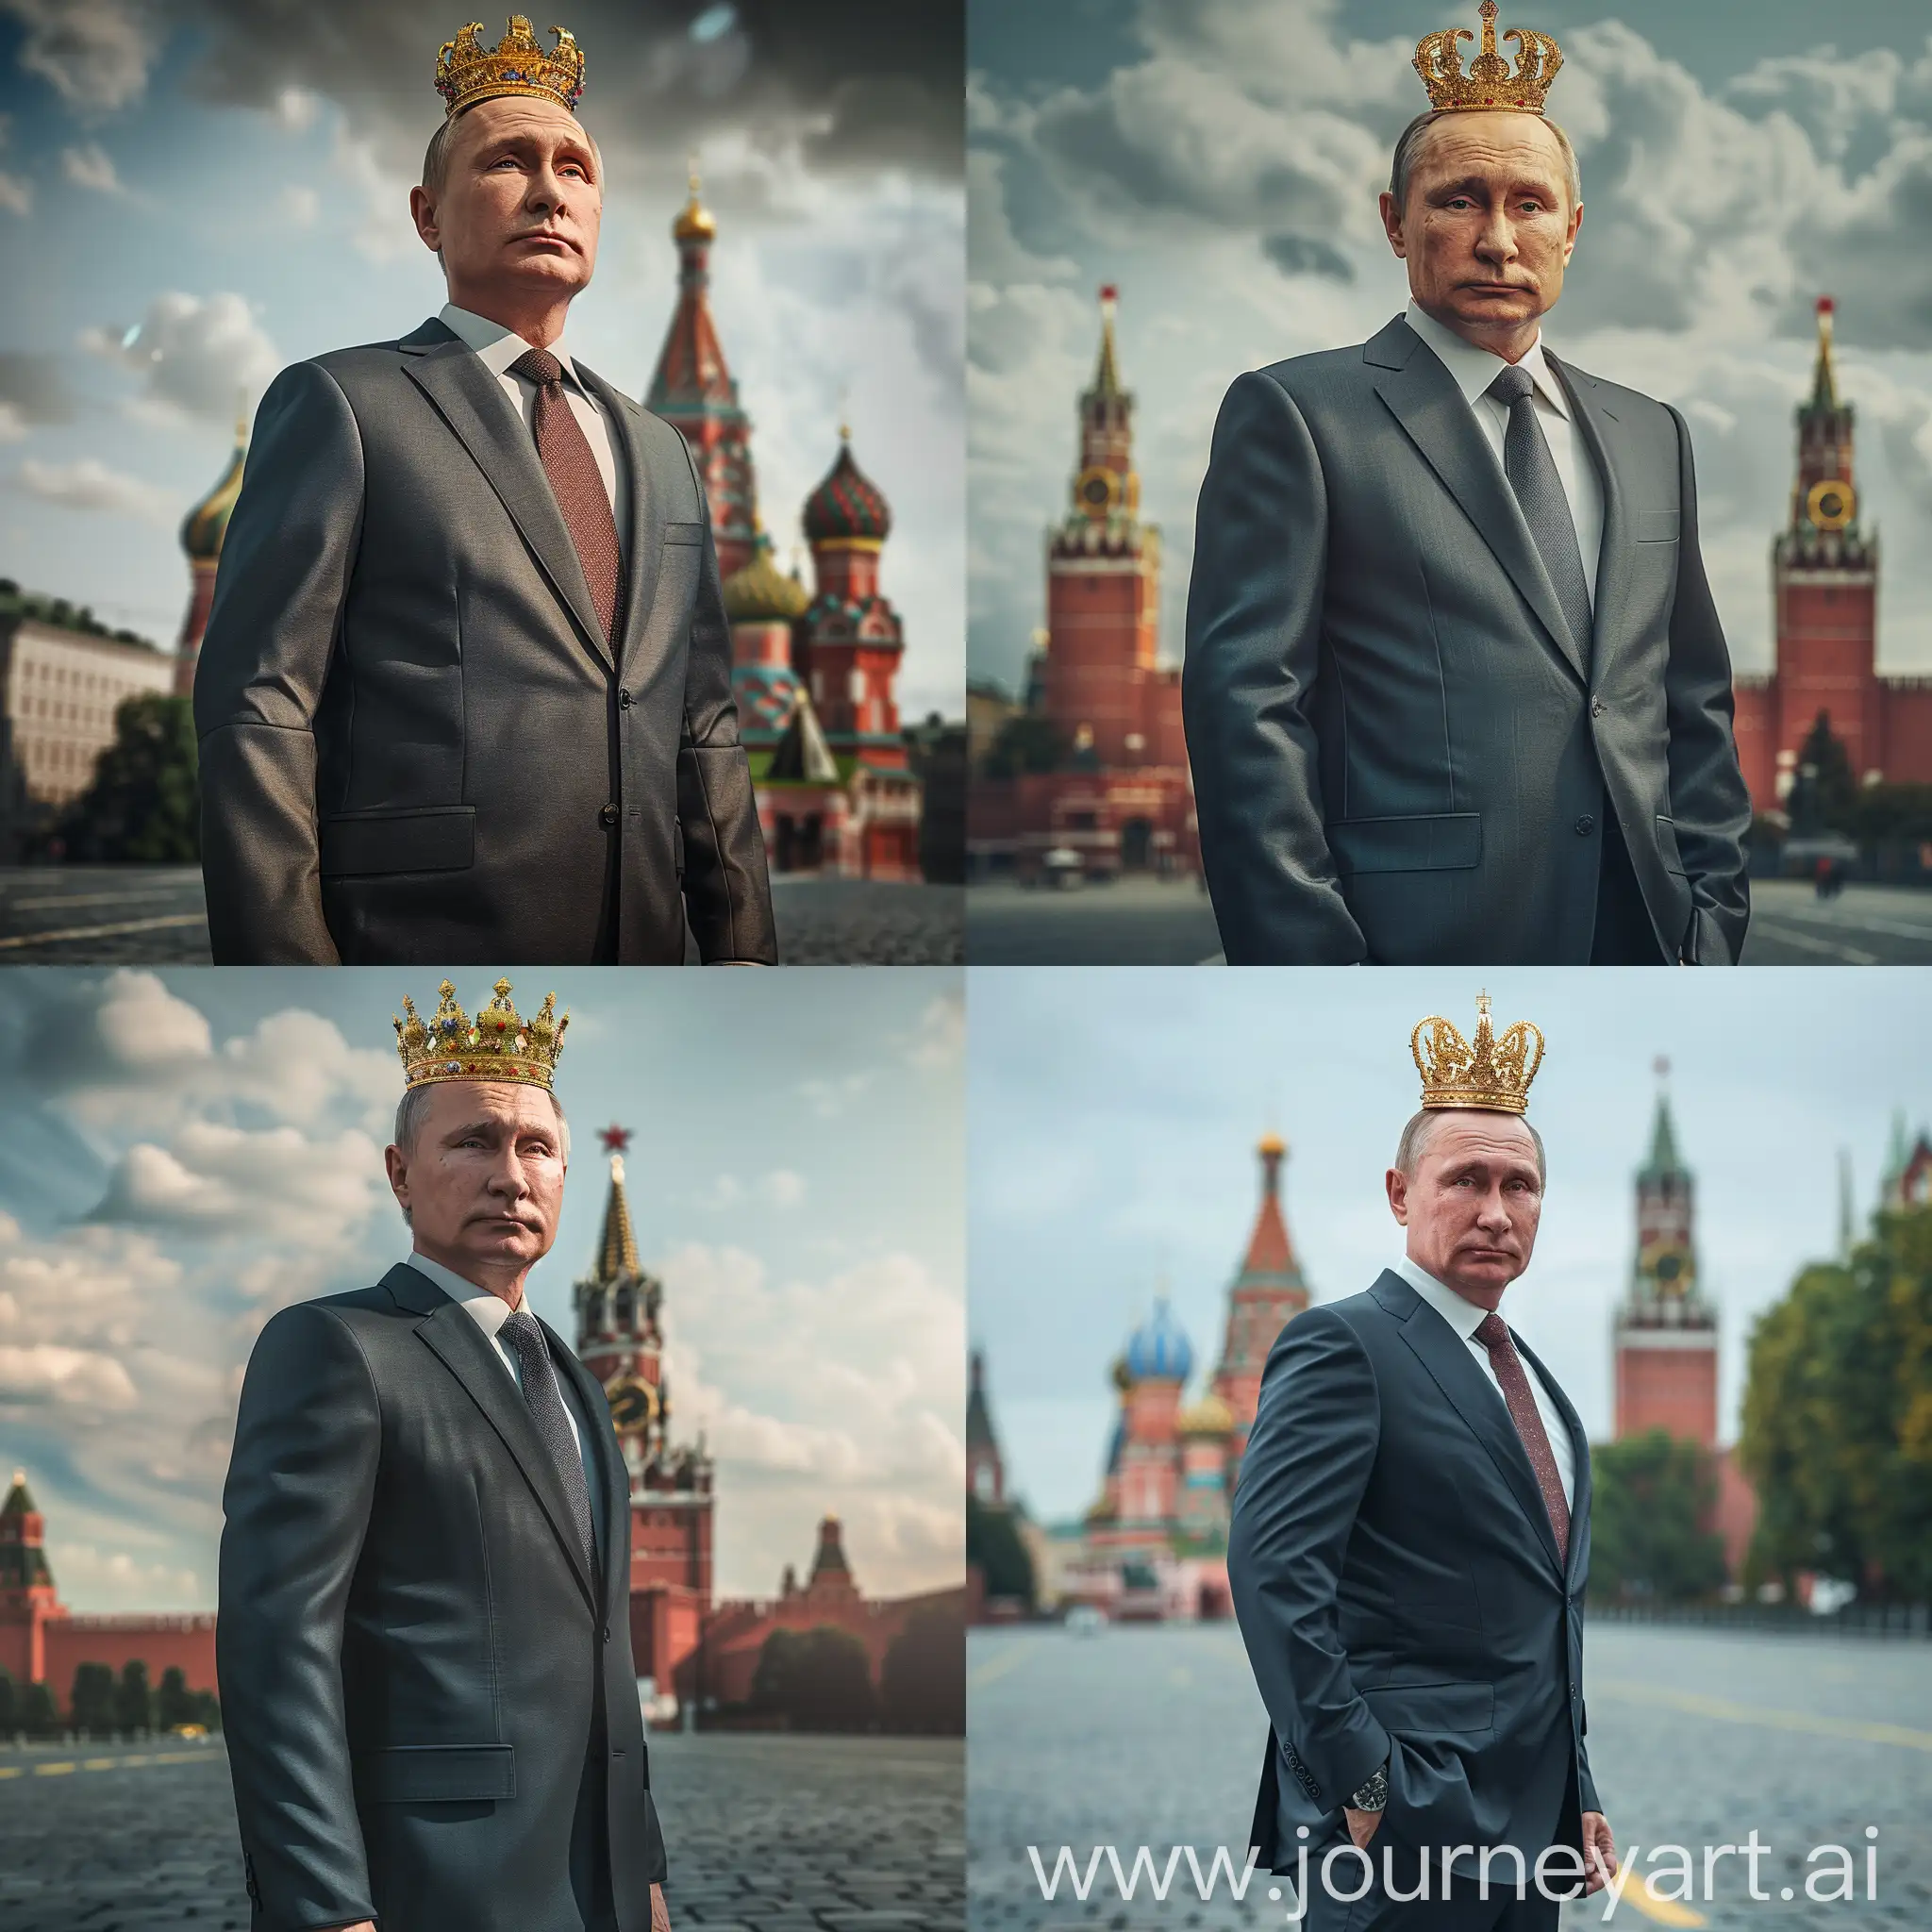 Владимир Путин, стоит в деловом костюме, на голове золотая корона, задний фон красная площадь, стиль 9 мая день победы, 8к, супер детализация, острый фокус, крупный план, гипер реализм, HDR, профессиональное освещение